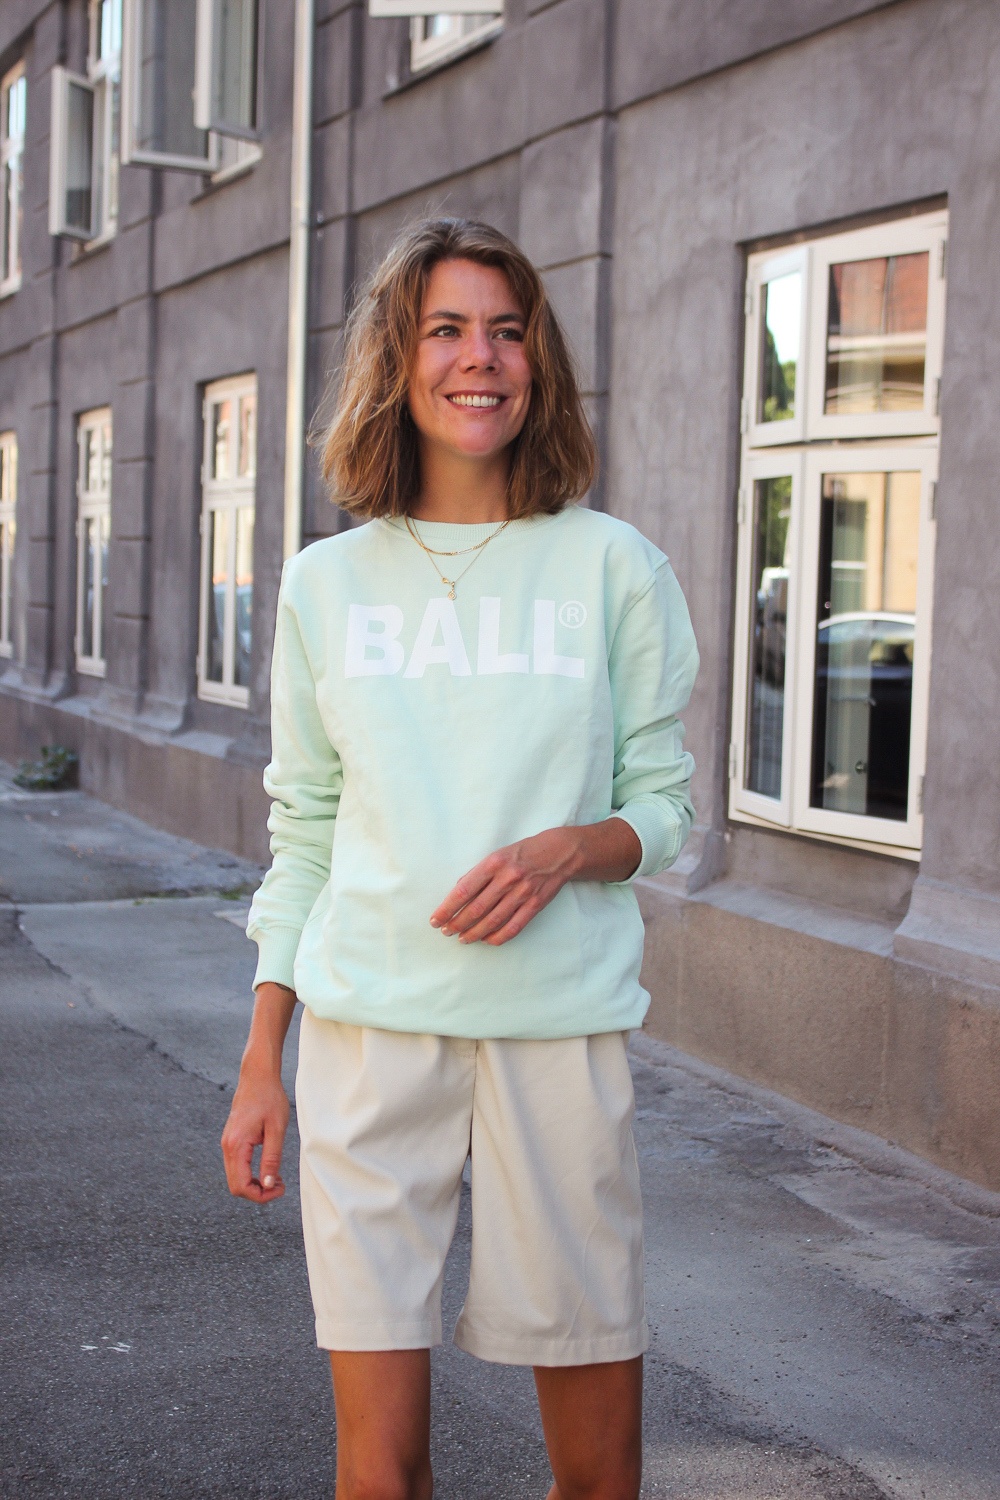 Ball sweatshirt - en gammel klassiker 